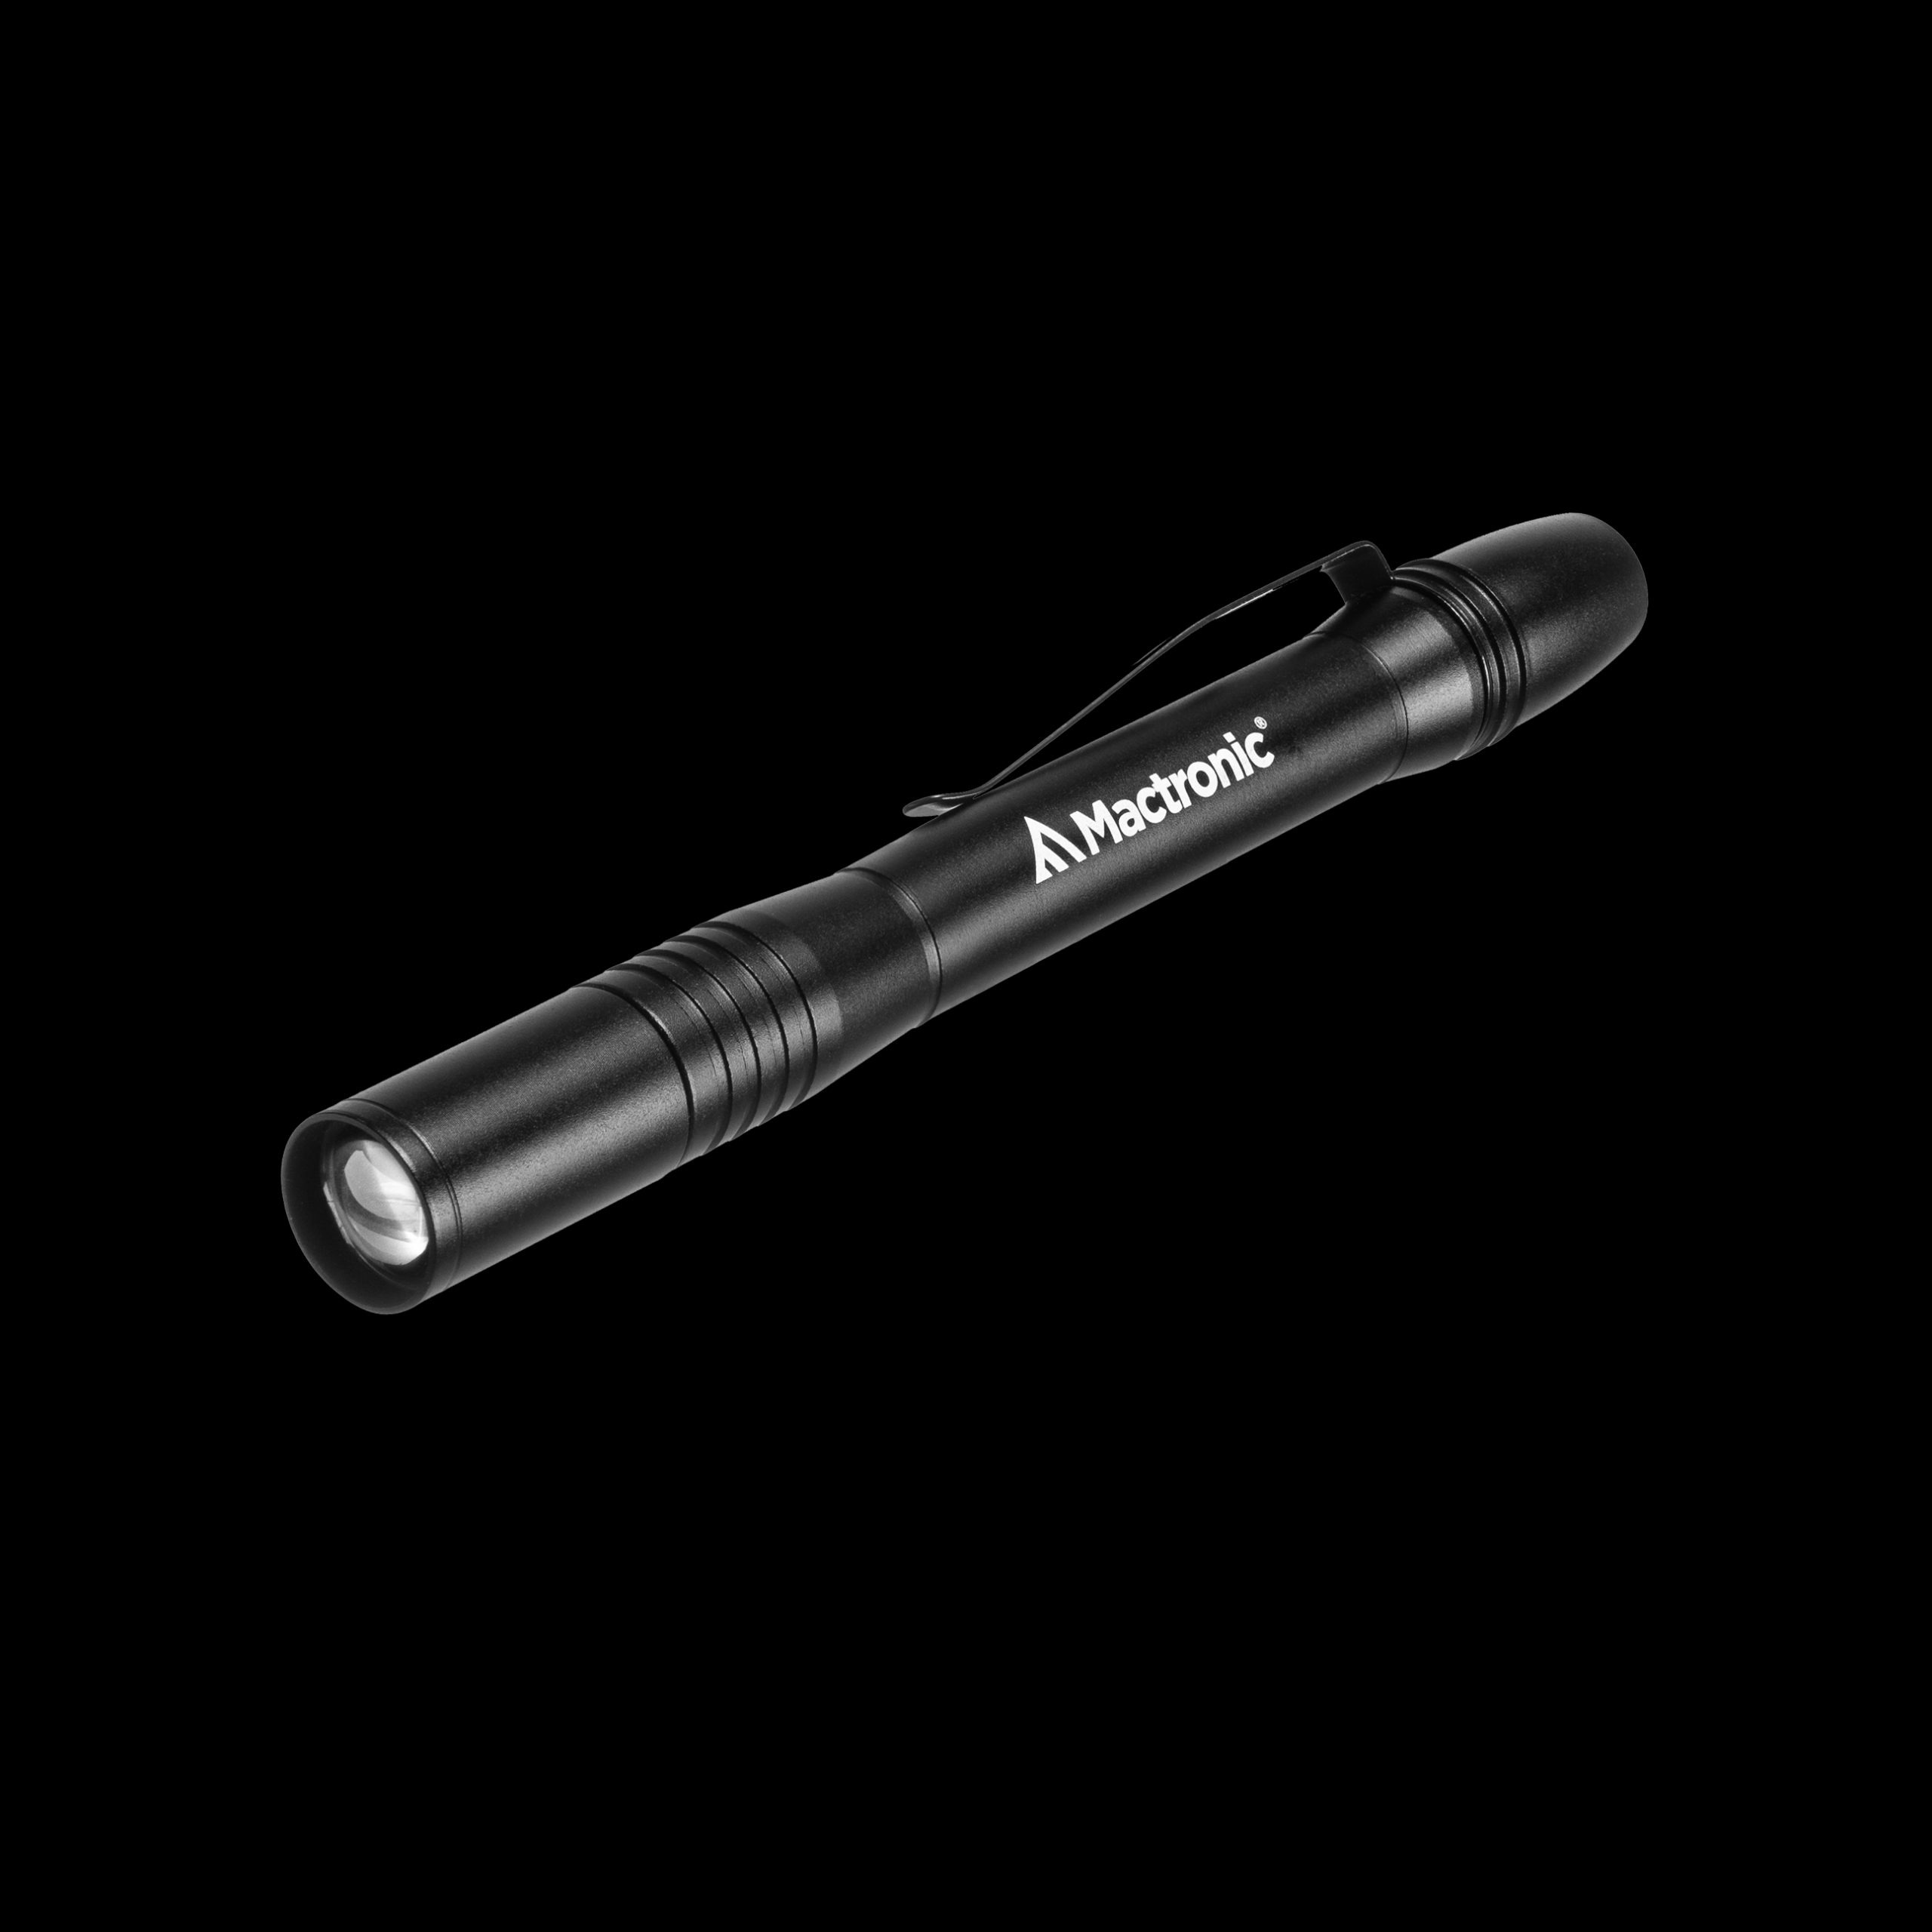 Stiftlampe mit hohem CRI, 50 lm, SUNSCAN 5.1